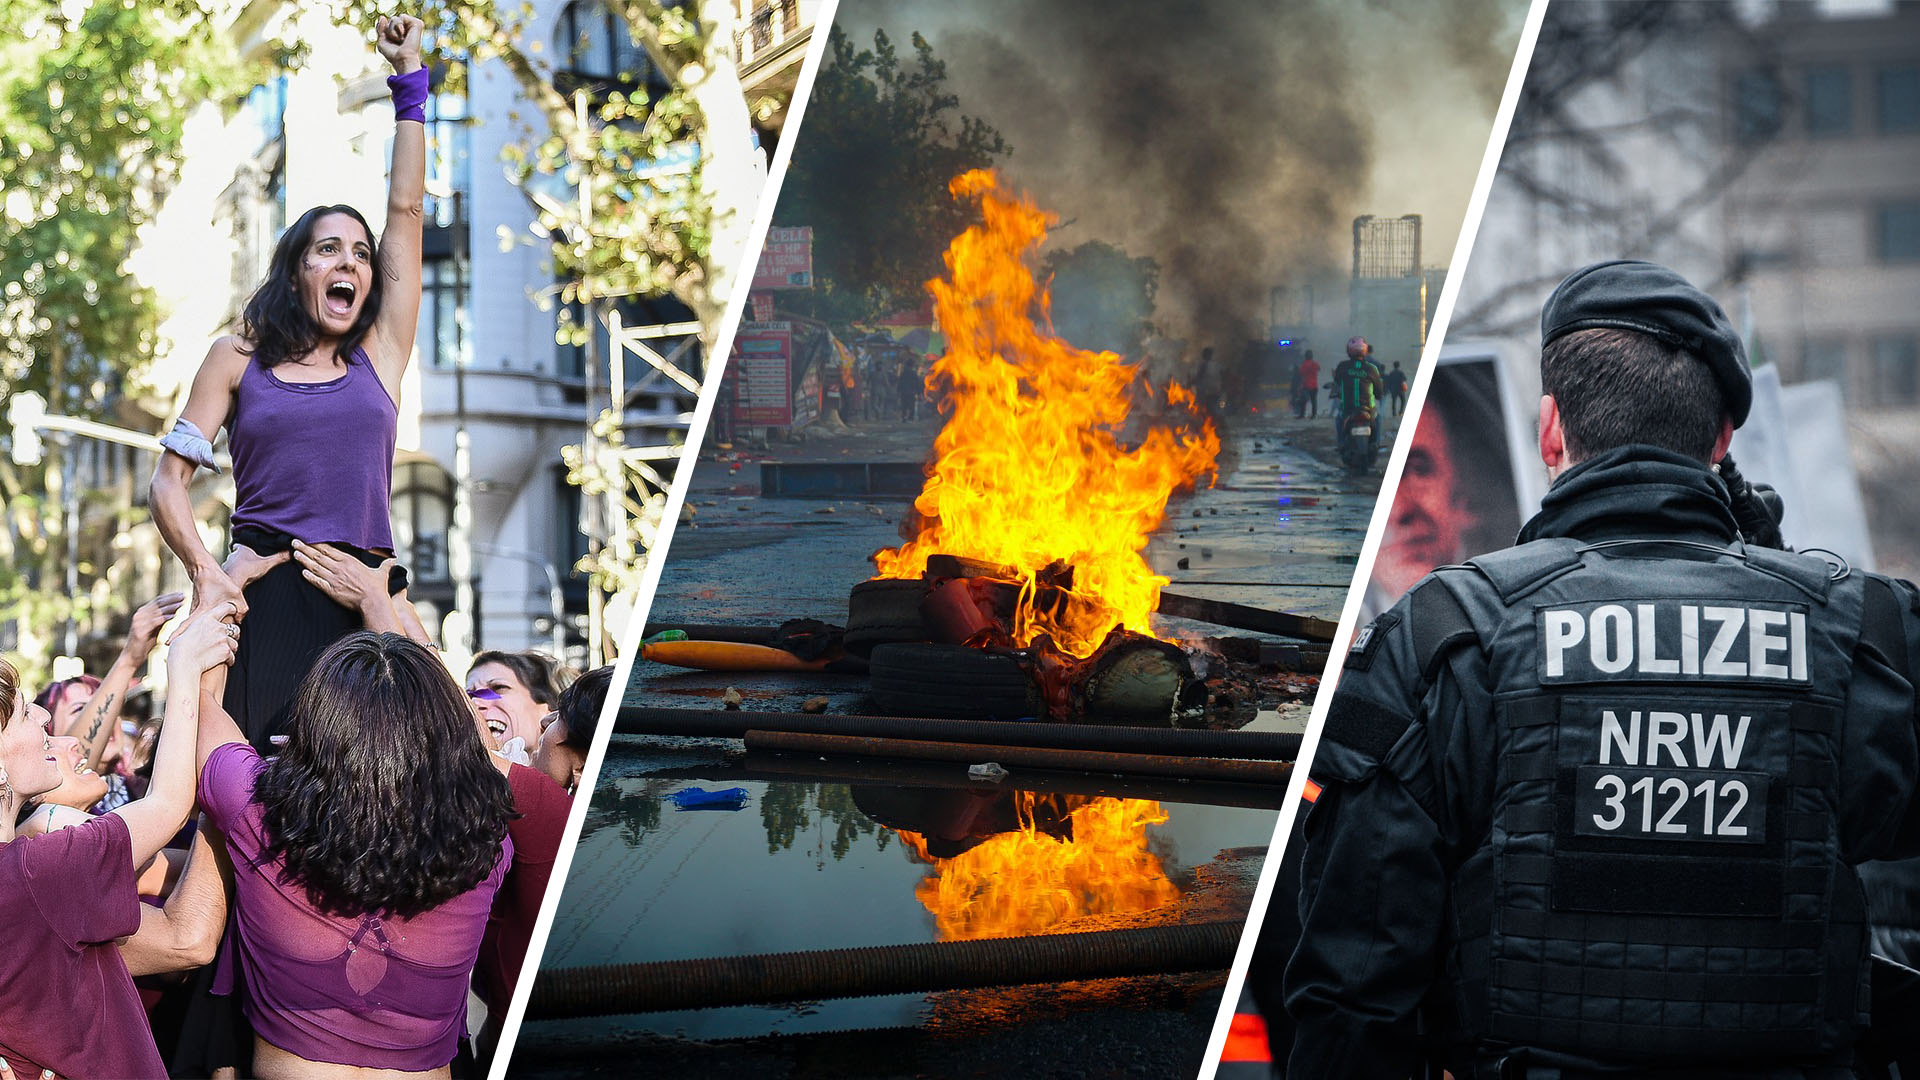 Auf einem dreigeteilten Bild steht: Links eine junge Aktivistin in Lila, die die linke Faust in den Himmel streckt und von Leuten hochgehoben wird. In der Mitte eine brennende Barrikade. Rechts ein Polizist der Polizei NRW mit dem Rücken zur Kamera.